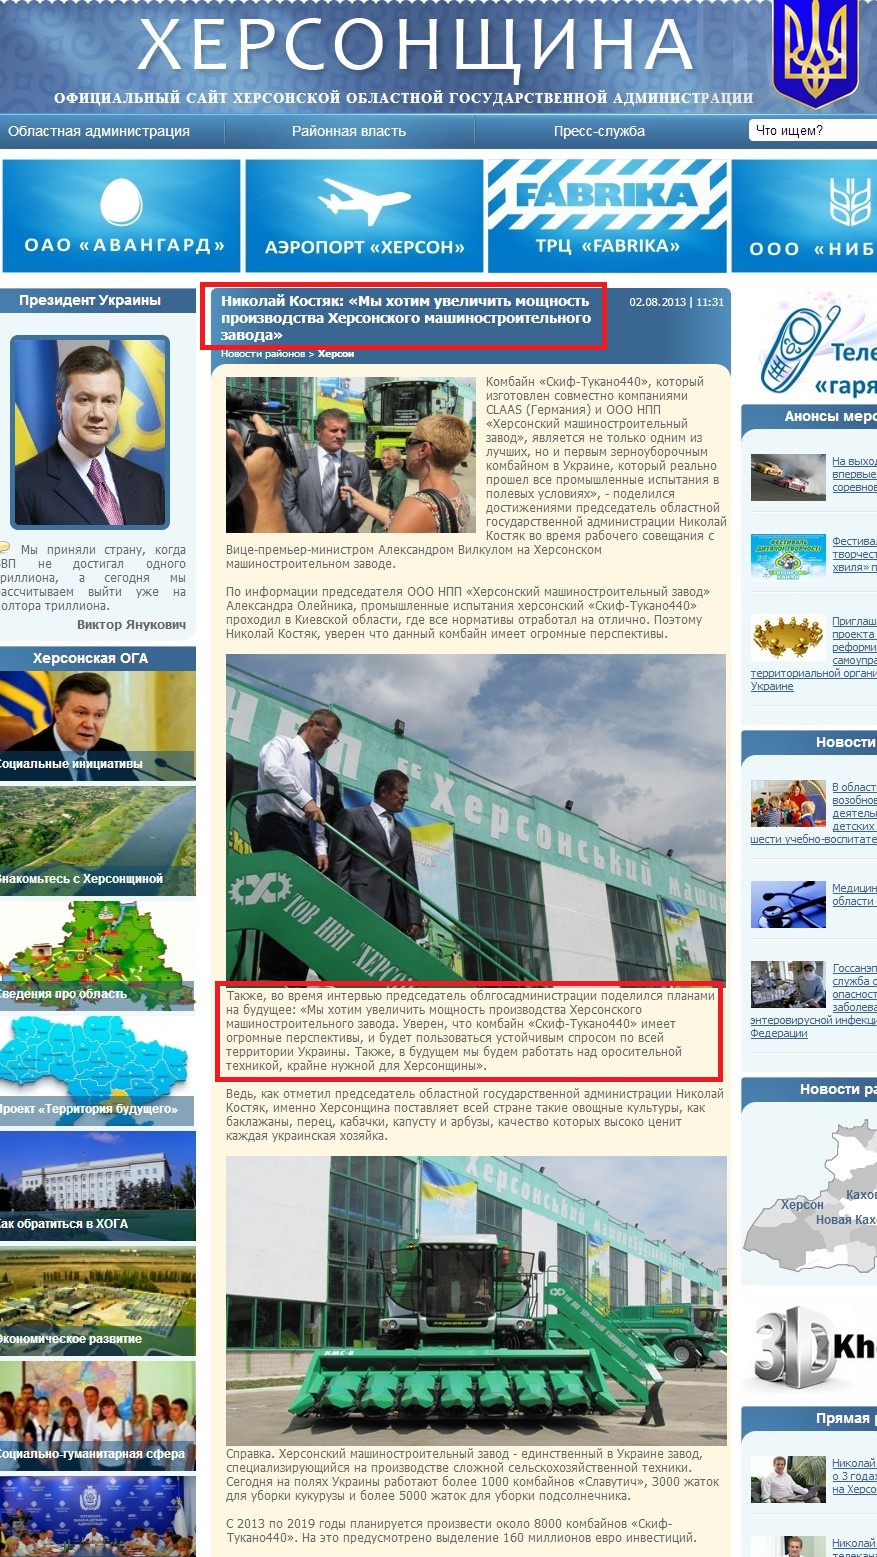 http://www.oda.kherson.ua/news/nikolajj-kostyak-my-hotim-uvelichit-moshhnost-proizvodstva-hersonskogo-mashinostroitelnogo-zavoda